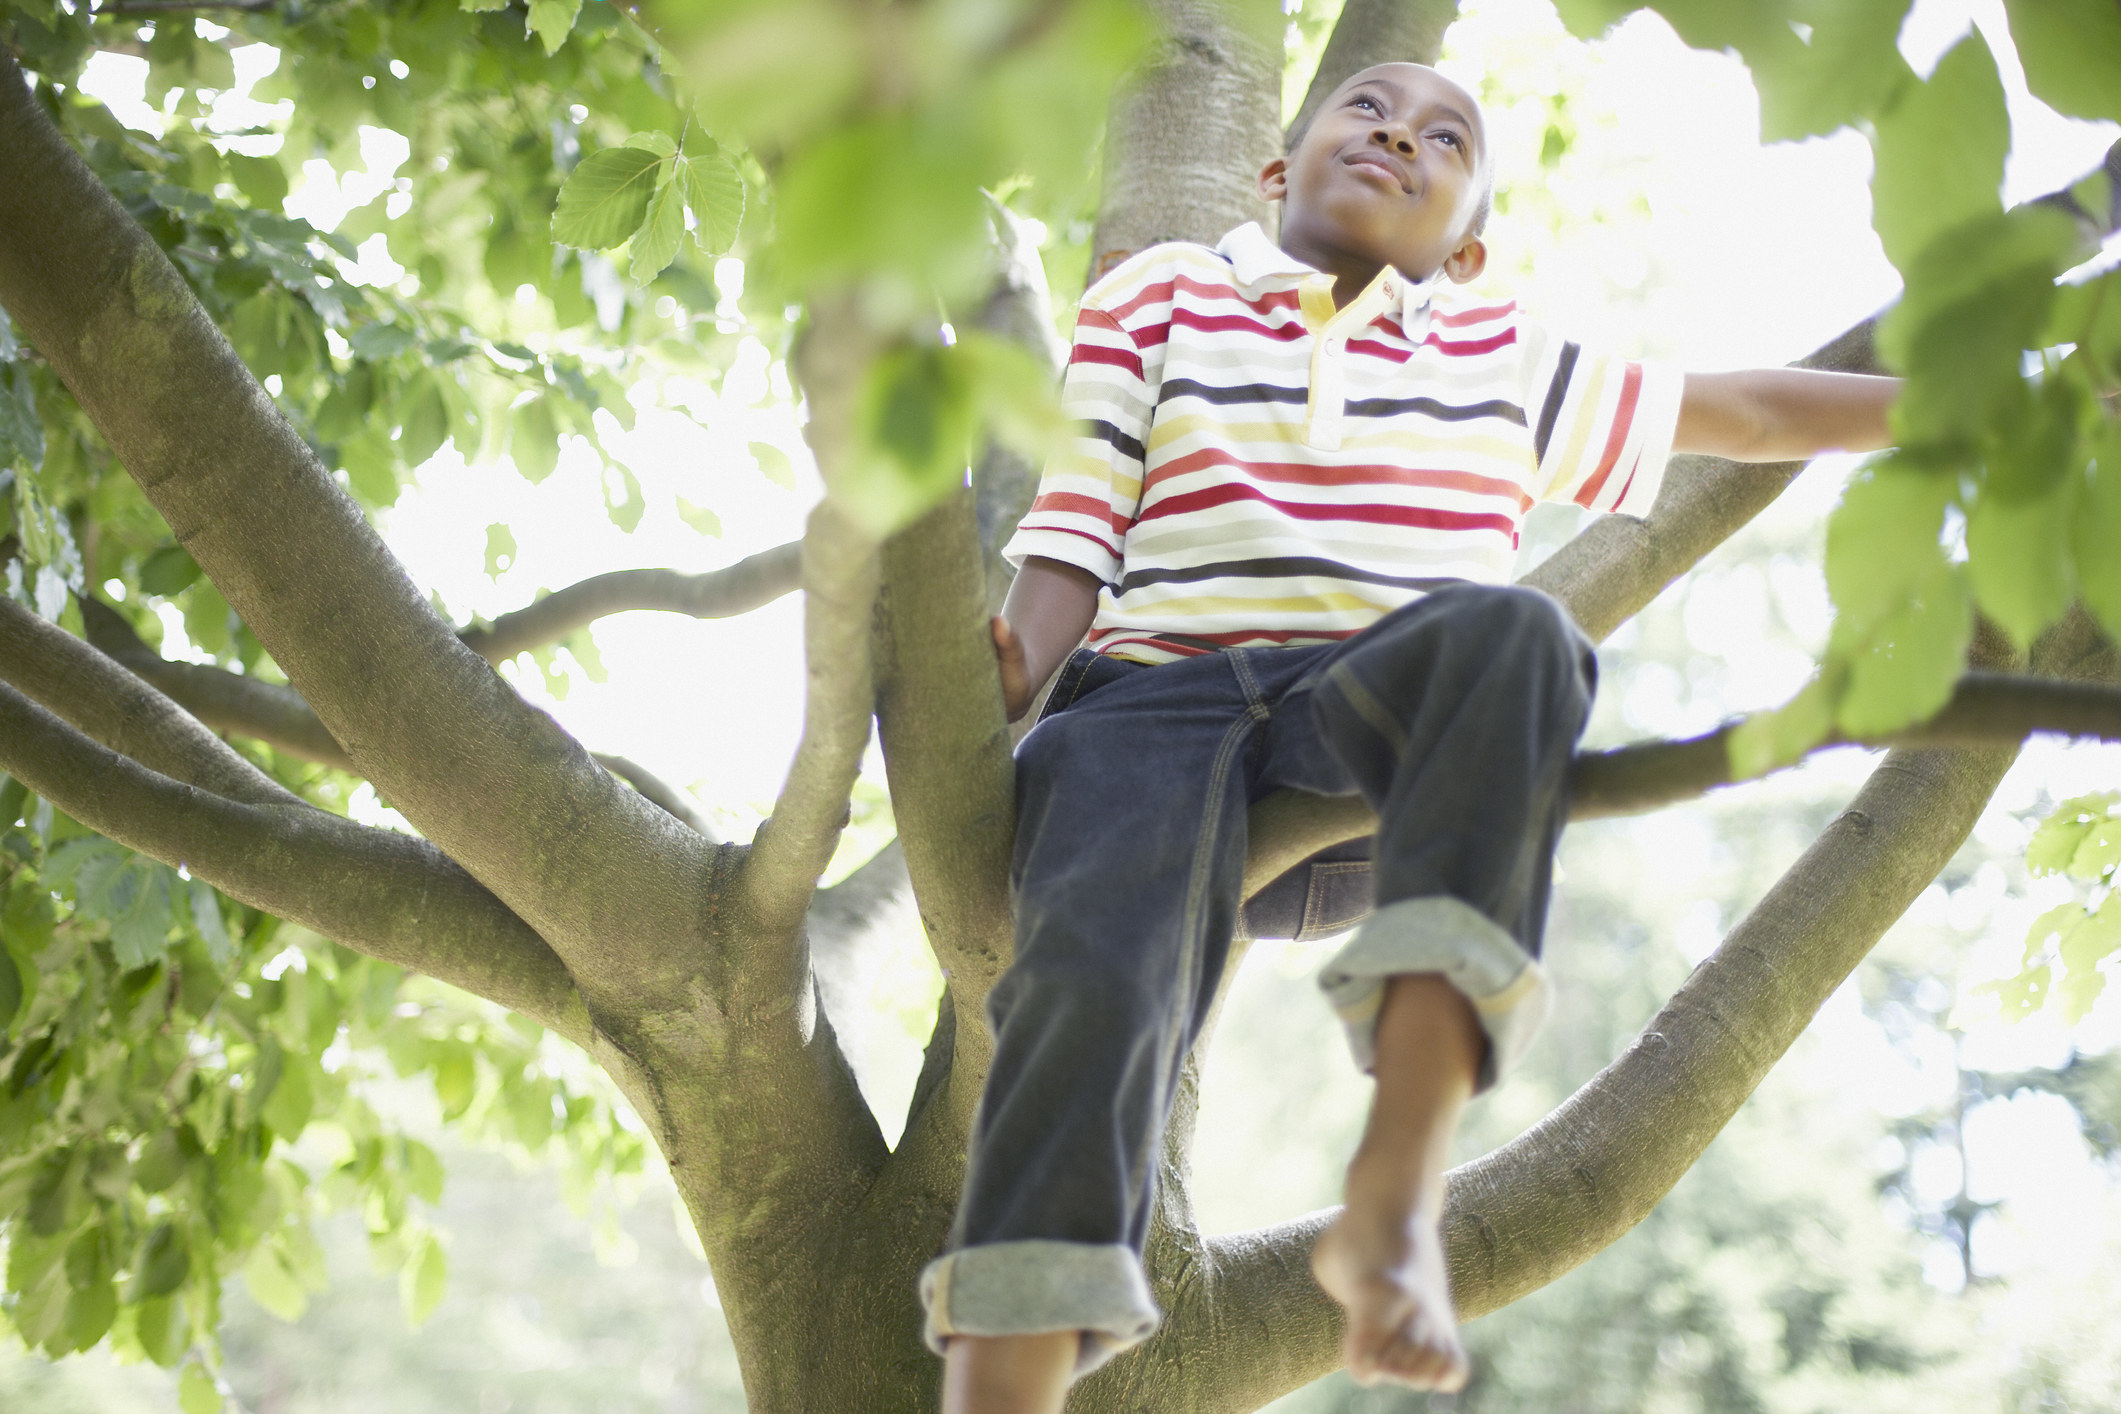 A little boy sitting in a tree